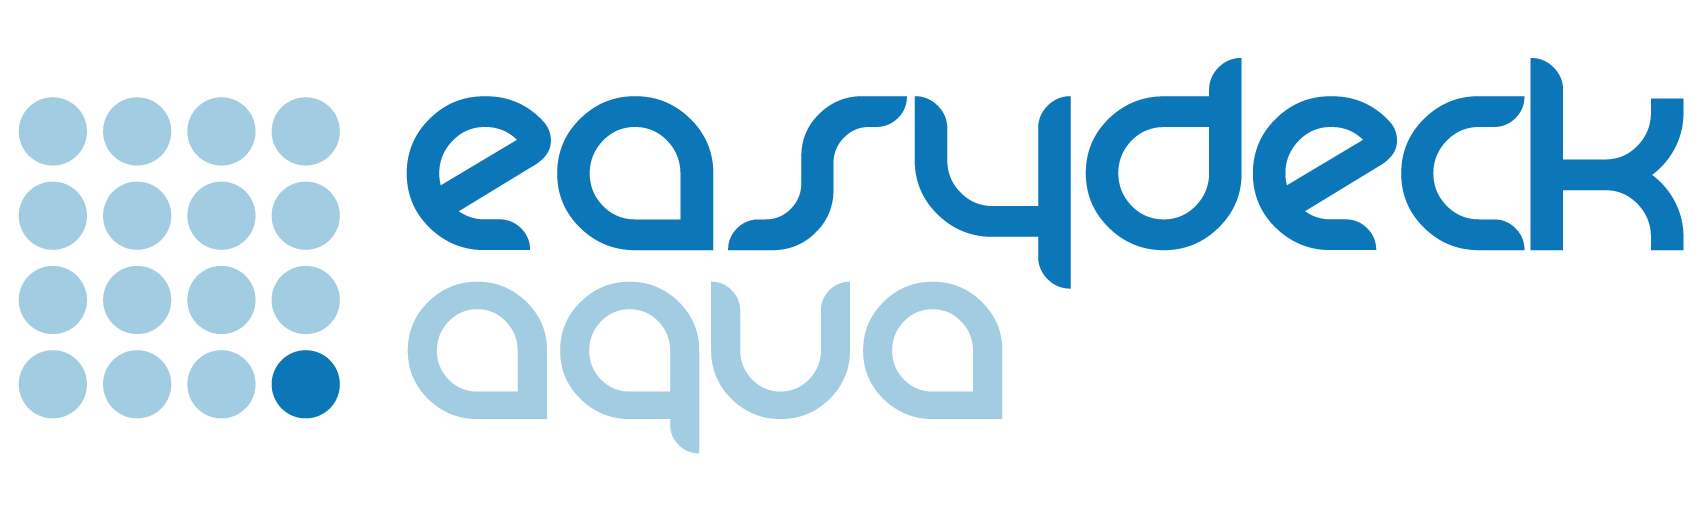 un logotipo azul y blanco para easydeck aqua